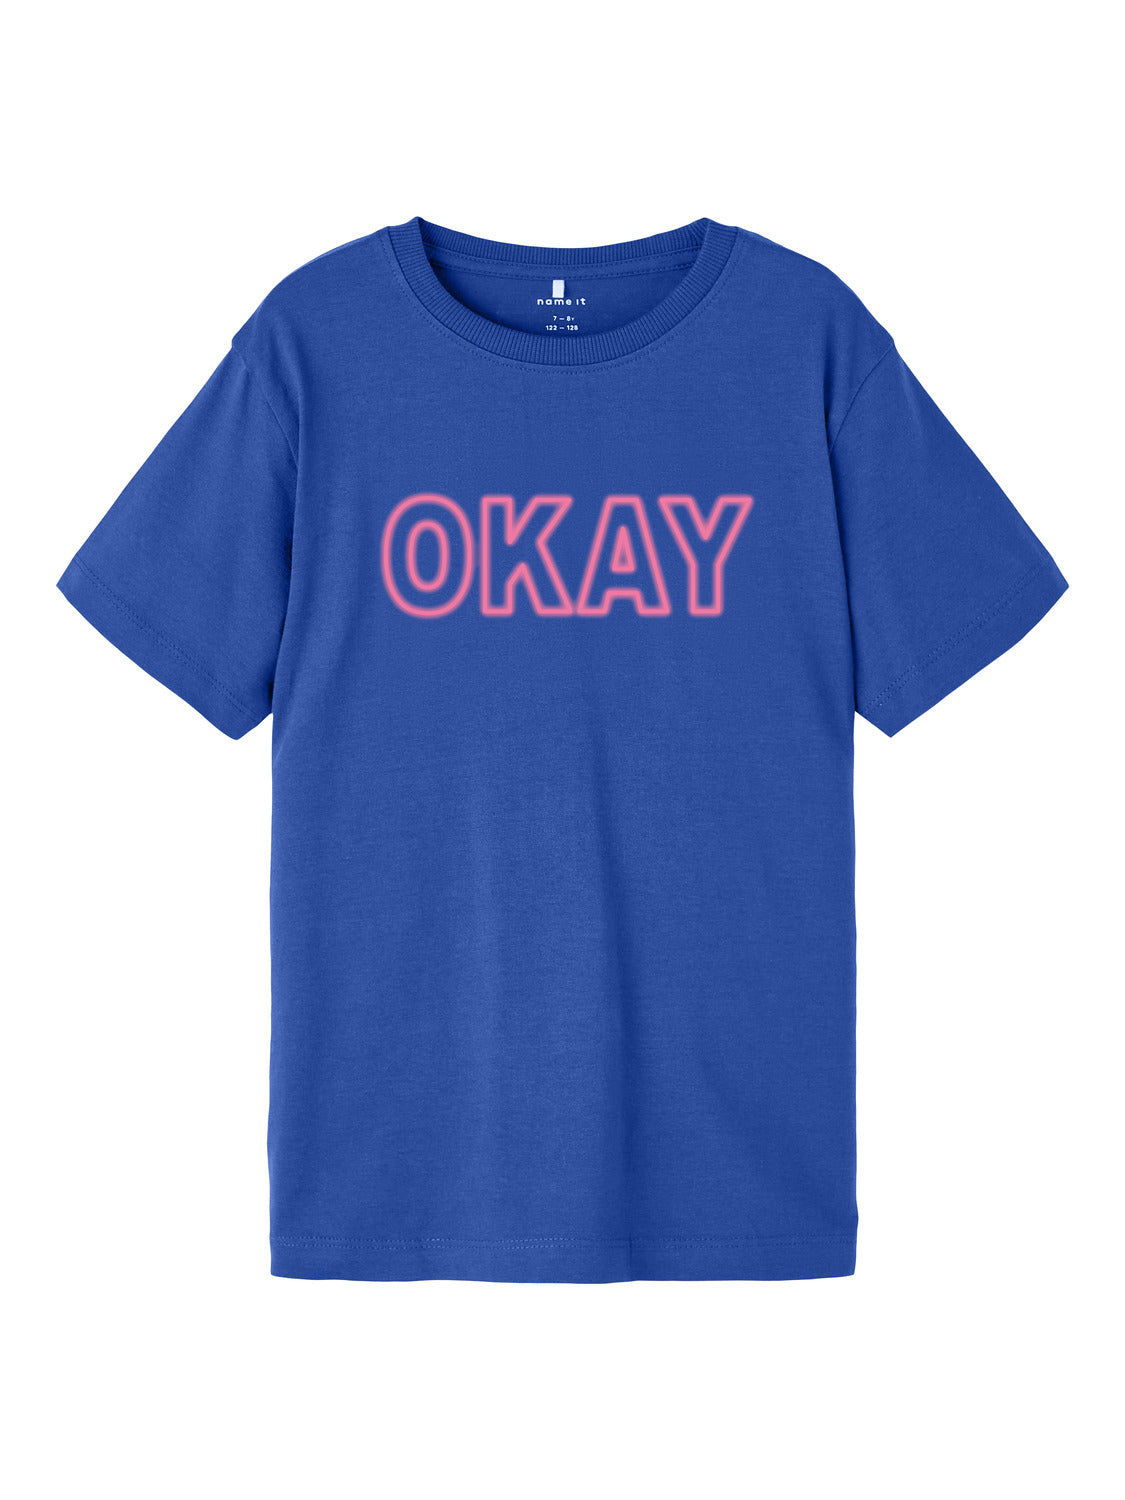 NKFNAOKAY T-Shirts & Tops - Dazzling Blue